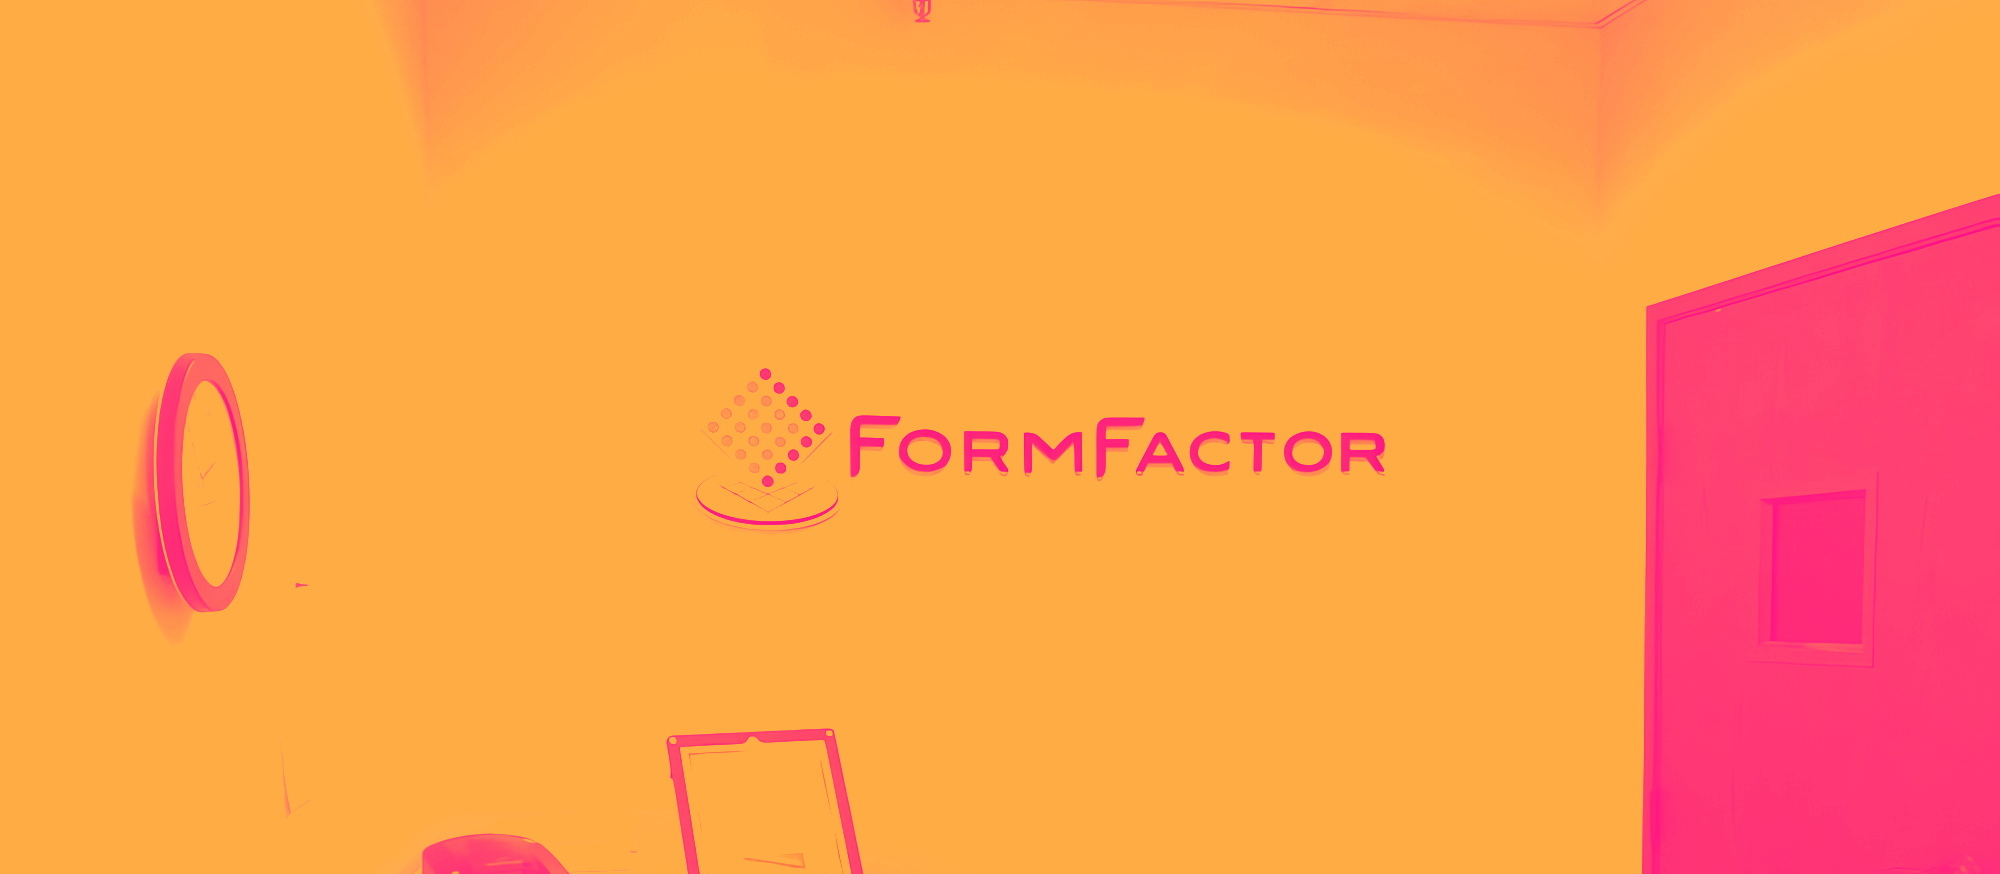 Formfactor cover image 7e231f41c753